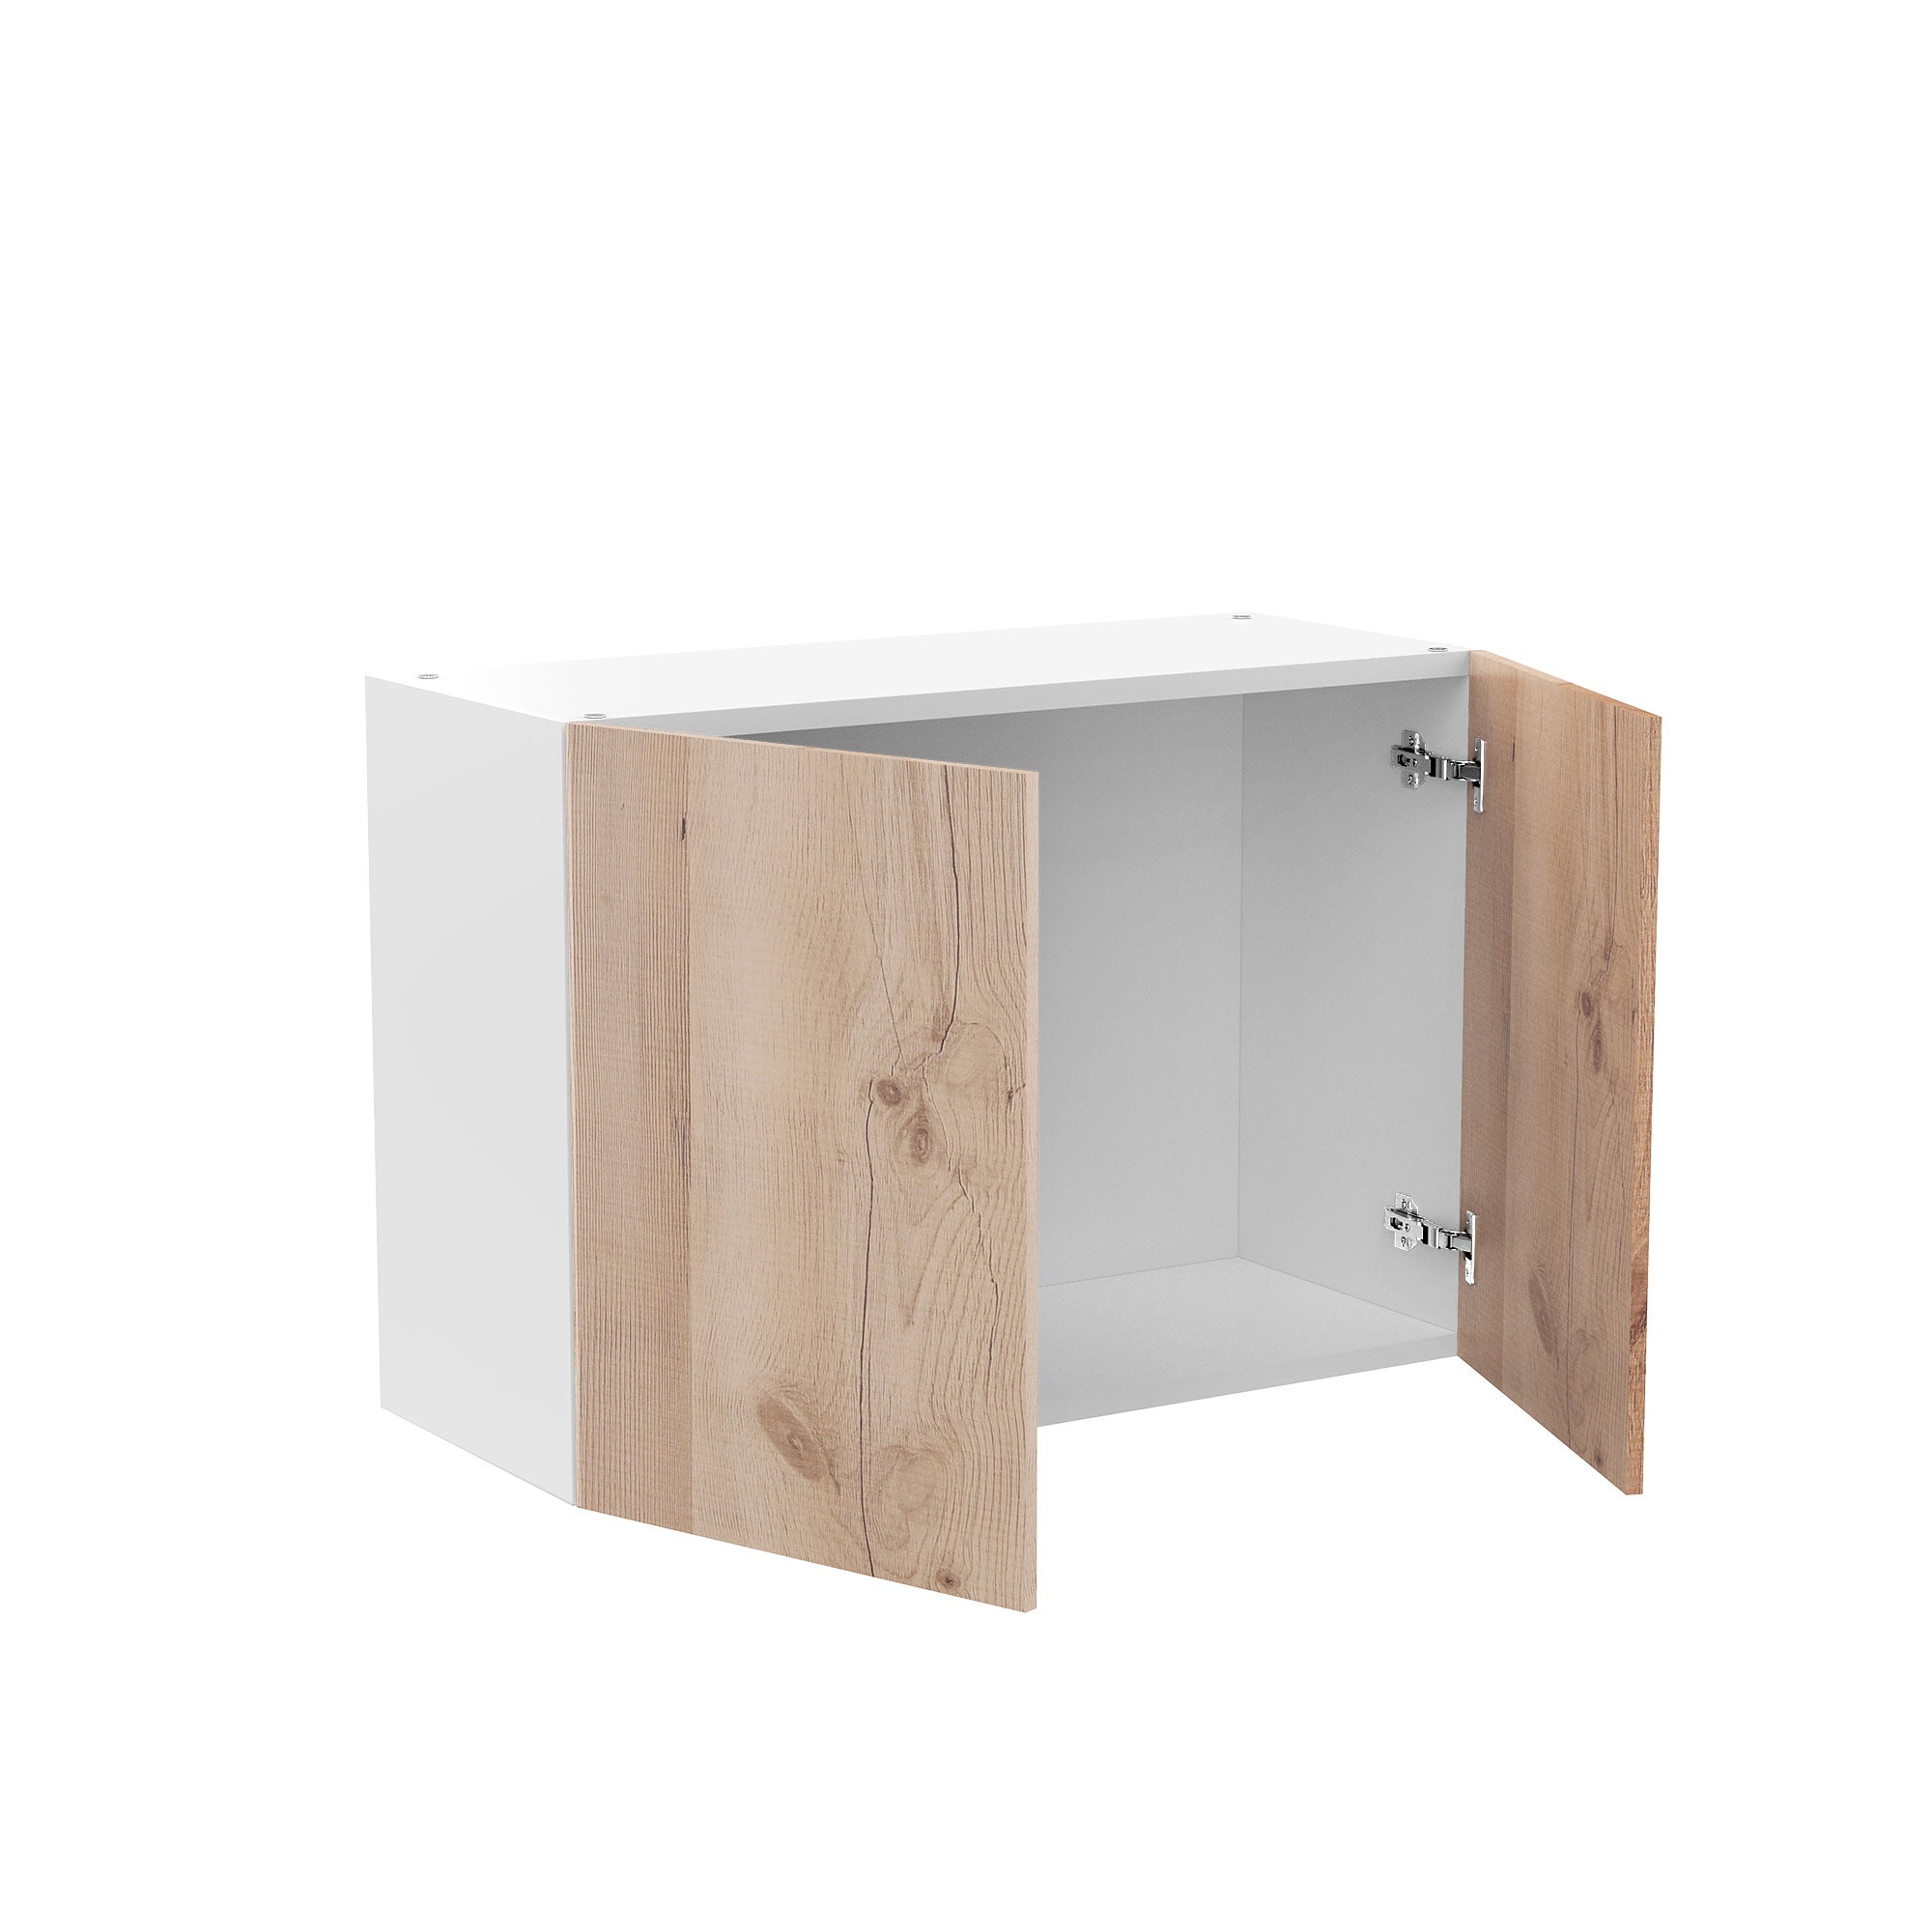 RTA - Rustic Oak - Double Door Wall Cabinets | 30"W x 21"H x 12"D